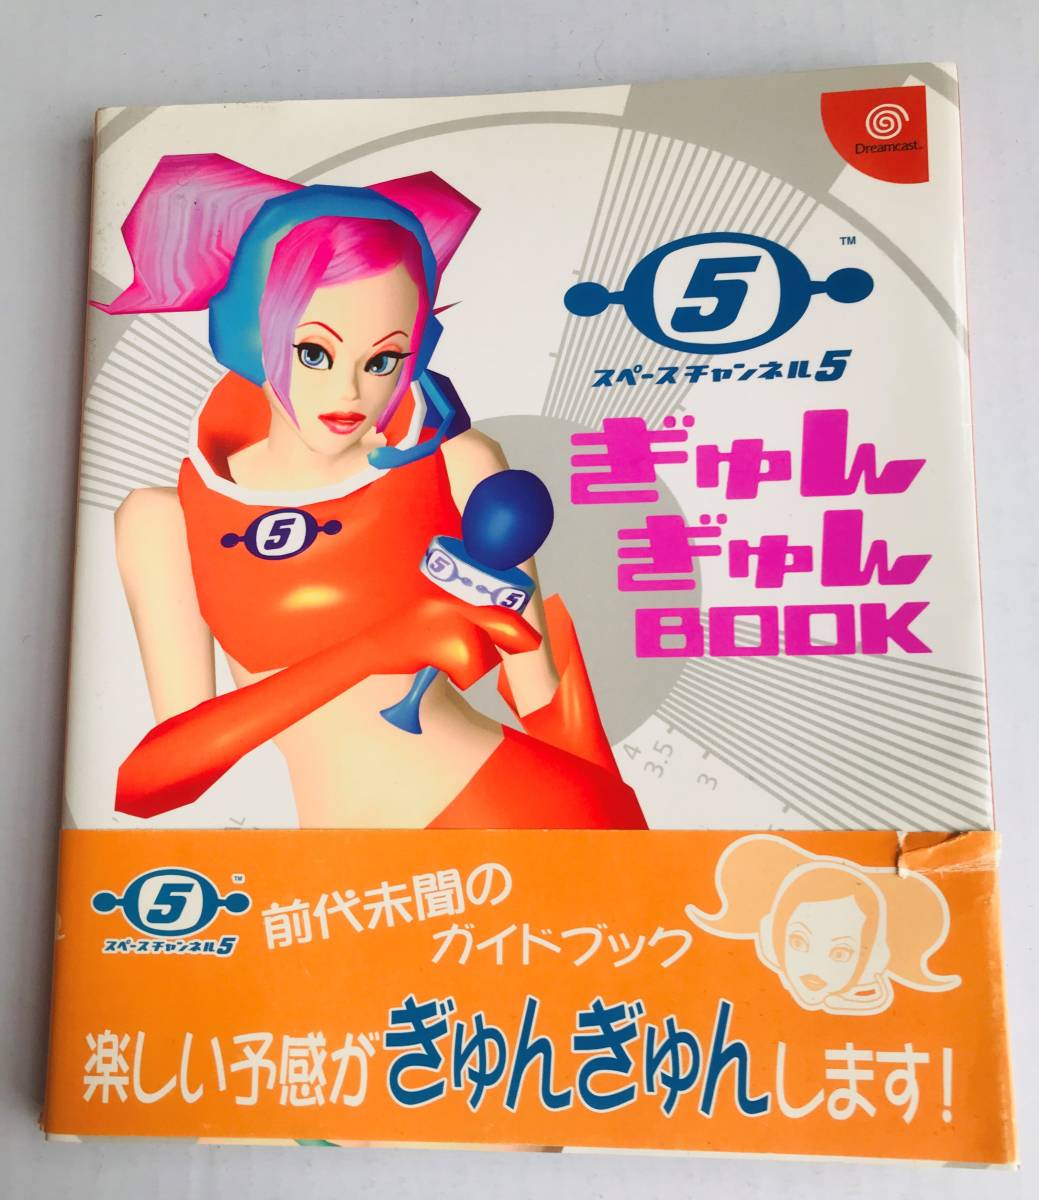 スペースチャンネル 5 ぎゅんぎゅんBOOK シール、帯付 DC 攻略本 ガイド Space Channel Gyungyun BOOK Sticker Dream Cast Guide Book